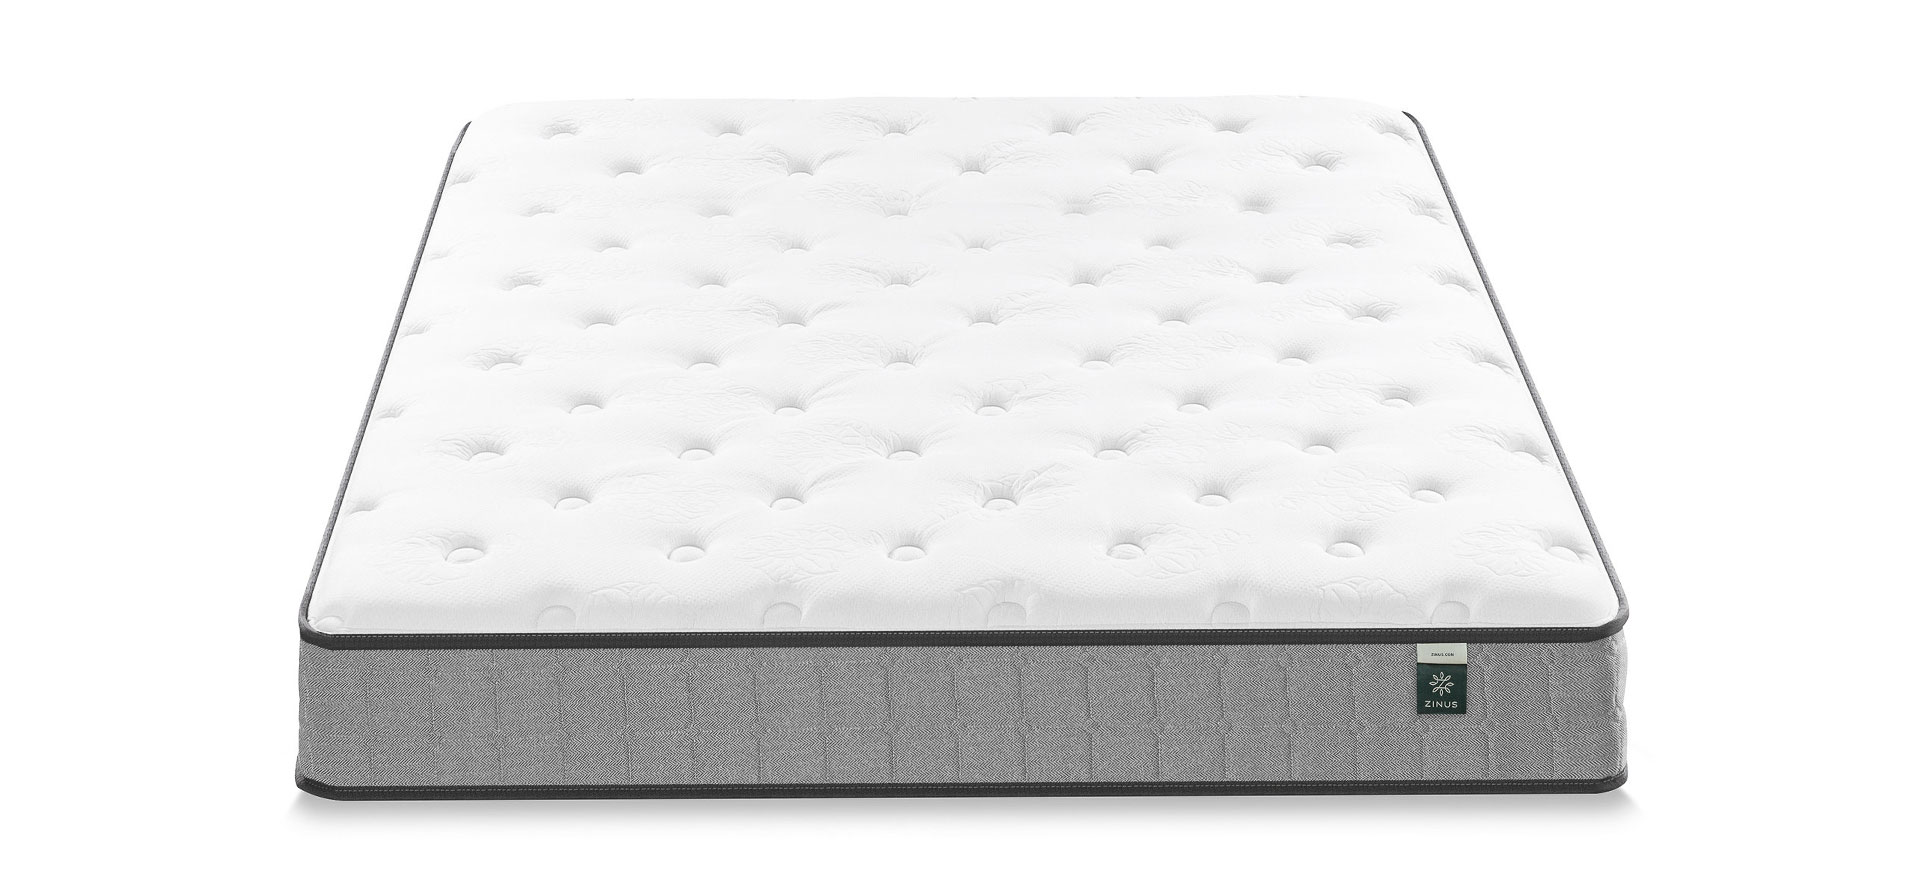 Zinus hybrid mattress.